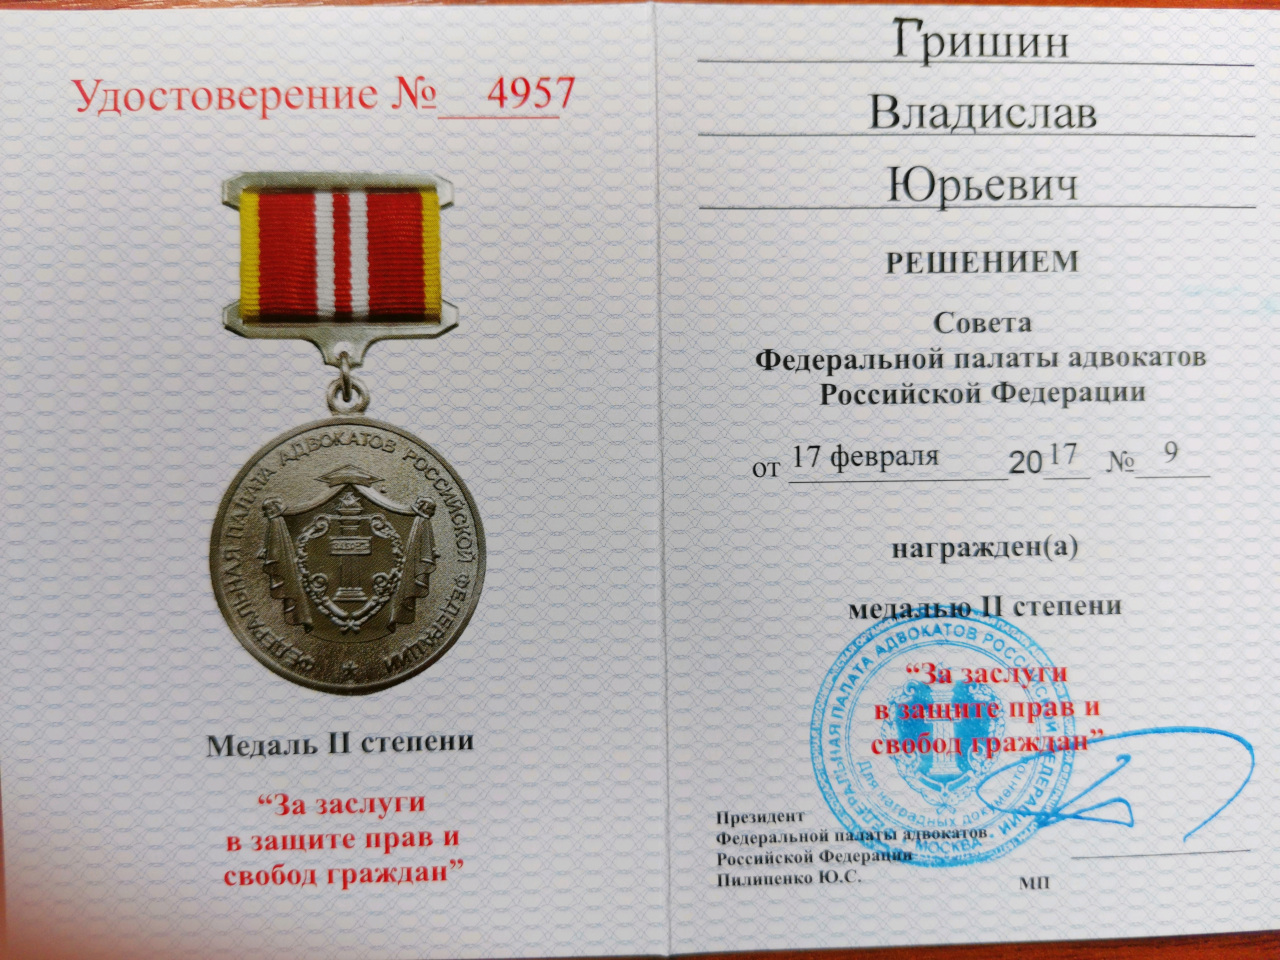 Дело в том, что в России, наконец, принят Федеральный закон «О бесплатной юридической помощи в Российской Федерации».  правовая помощь работникам первичная